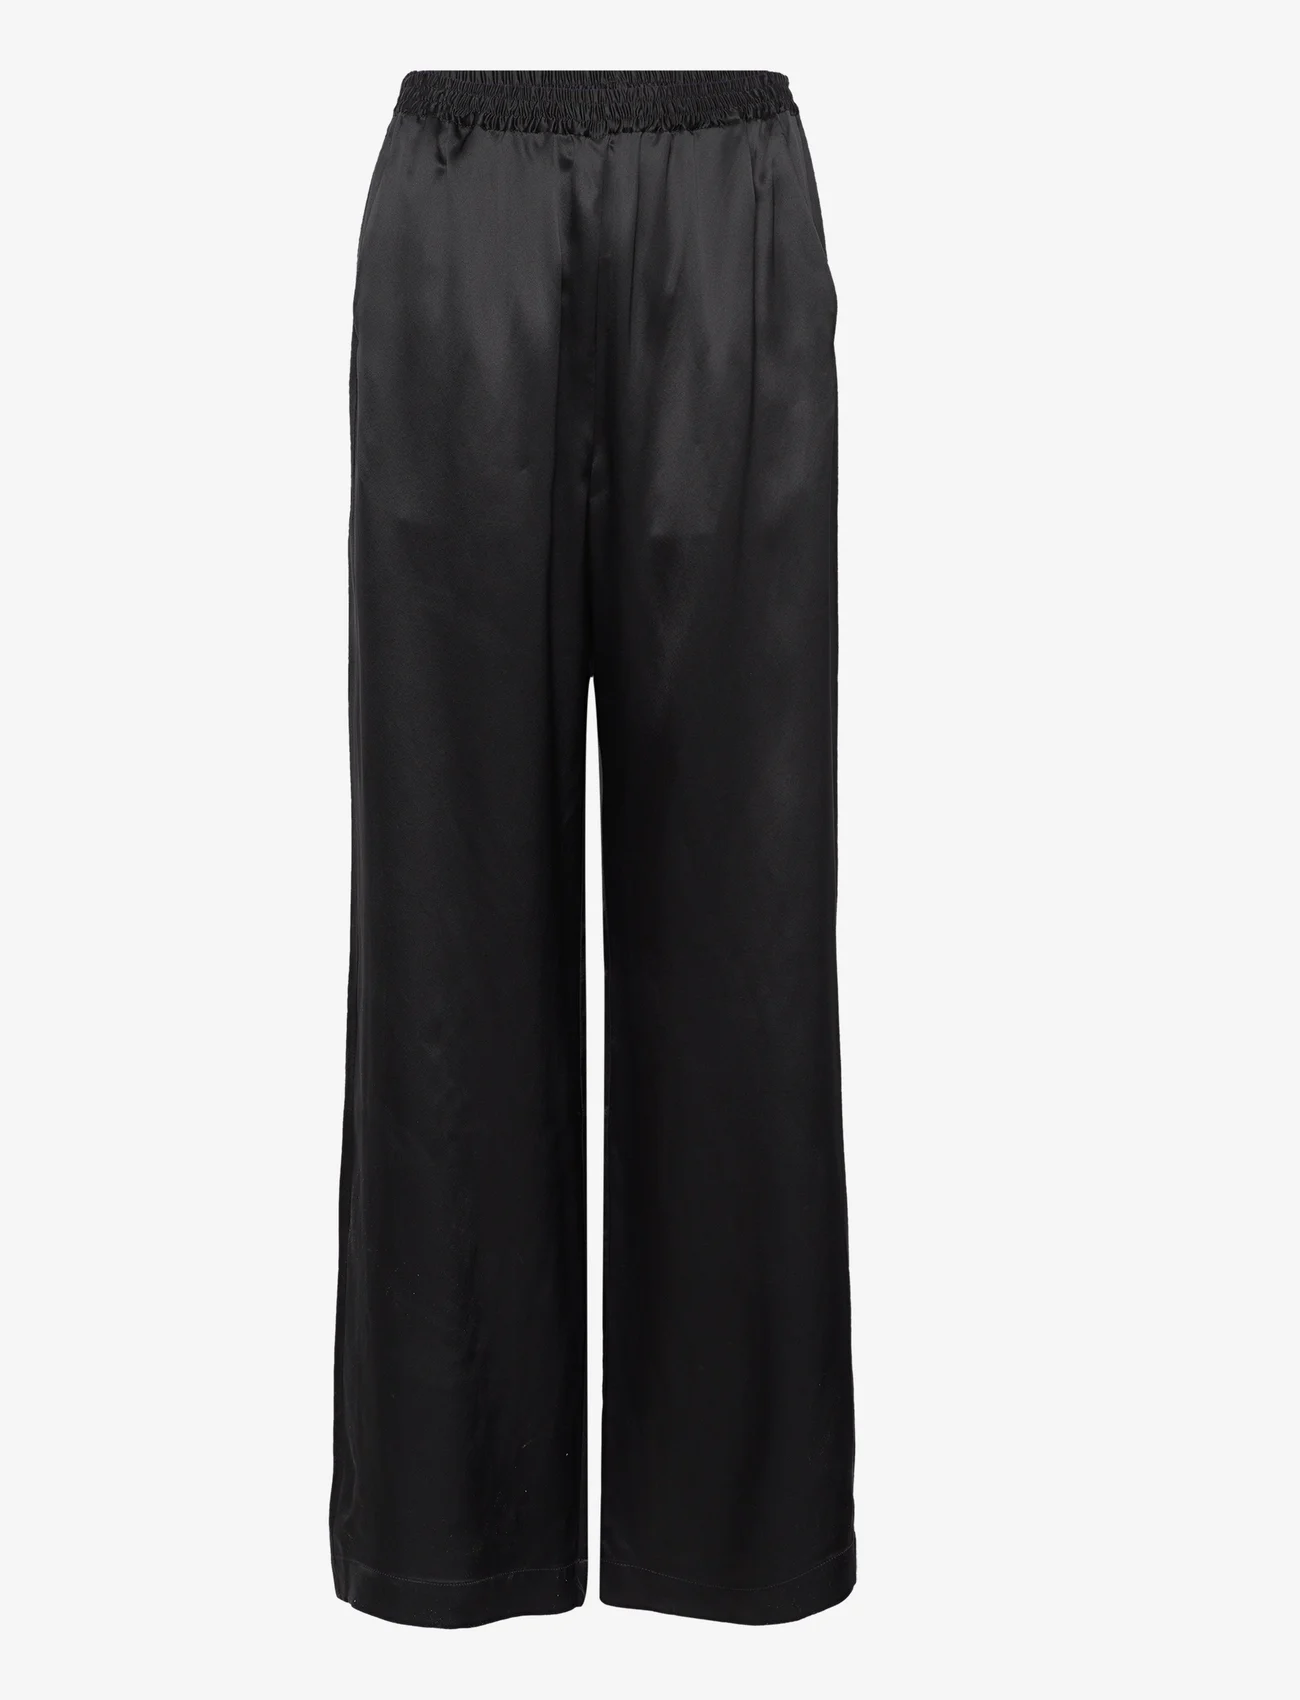 Wood Wood - Florence trousers - bukser med brede ben - black - 0